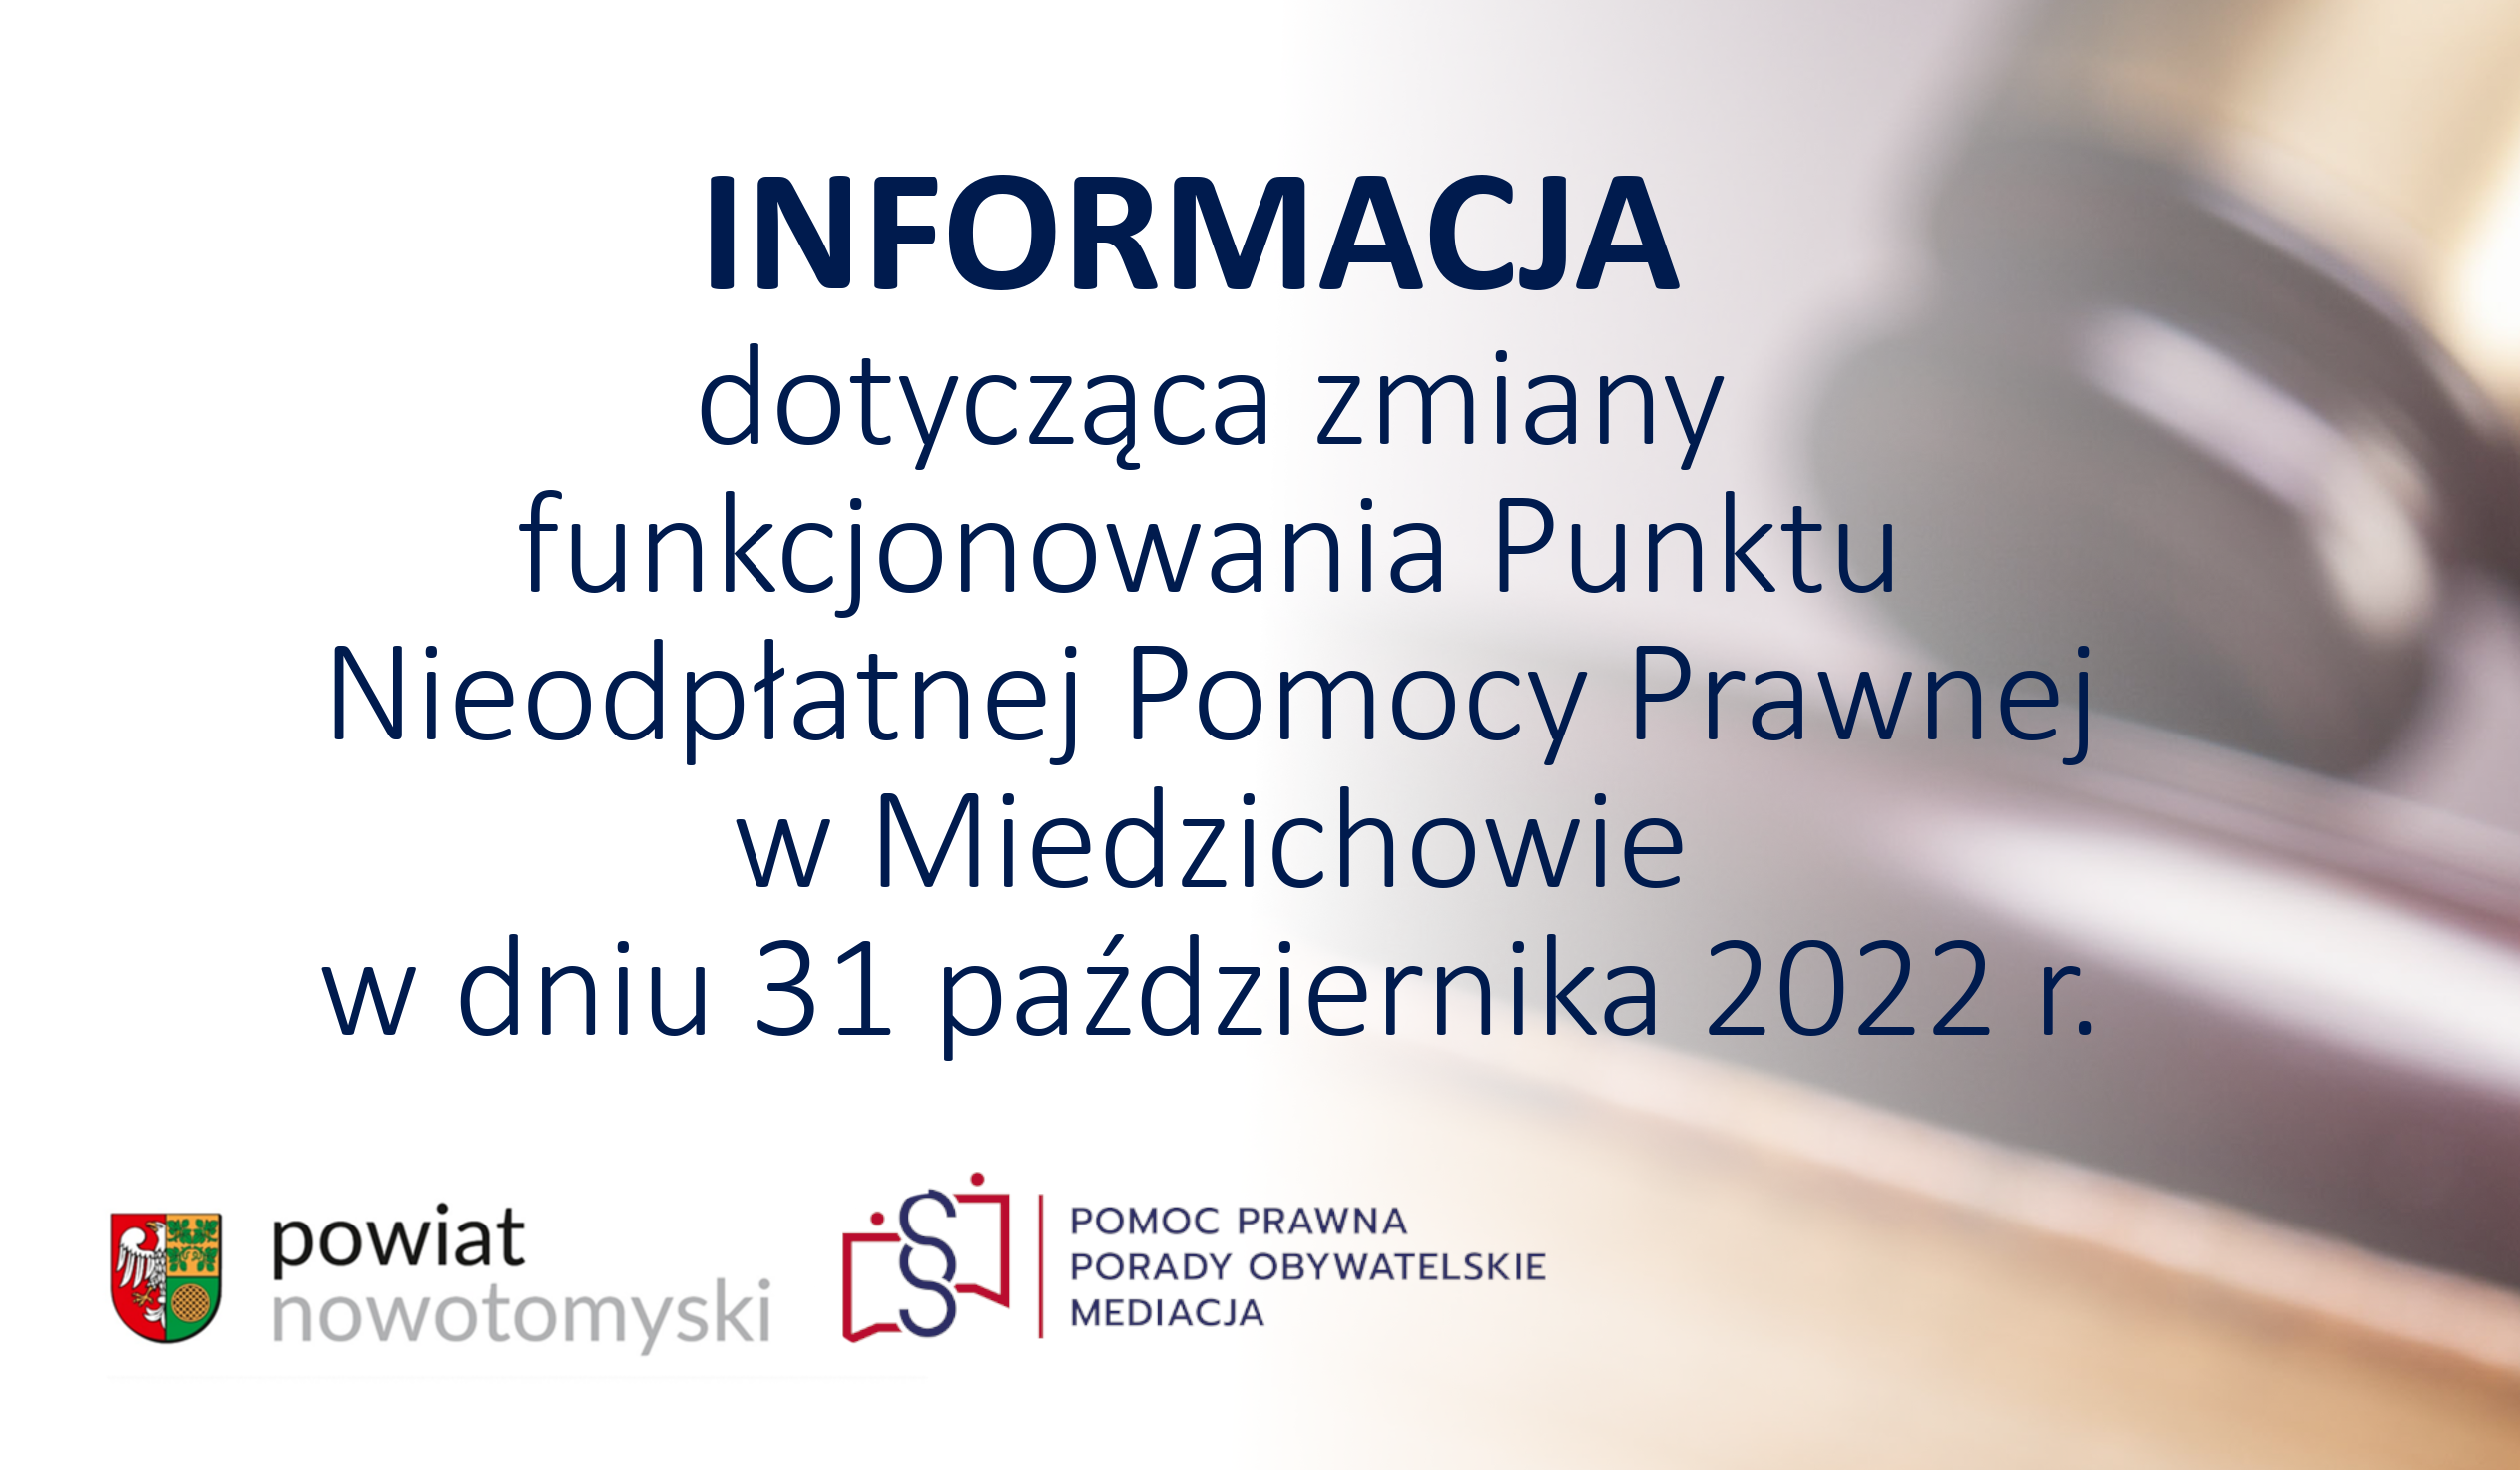 Ilustracja do informacji: INFORMACJA dotycząca zmiany funkcjonowania Punktu Nieodpłatnej Pomocy Prawnej w Miedzichowie w dniu 31 października 2022 r.